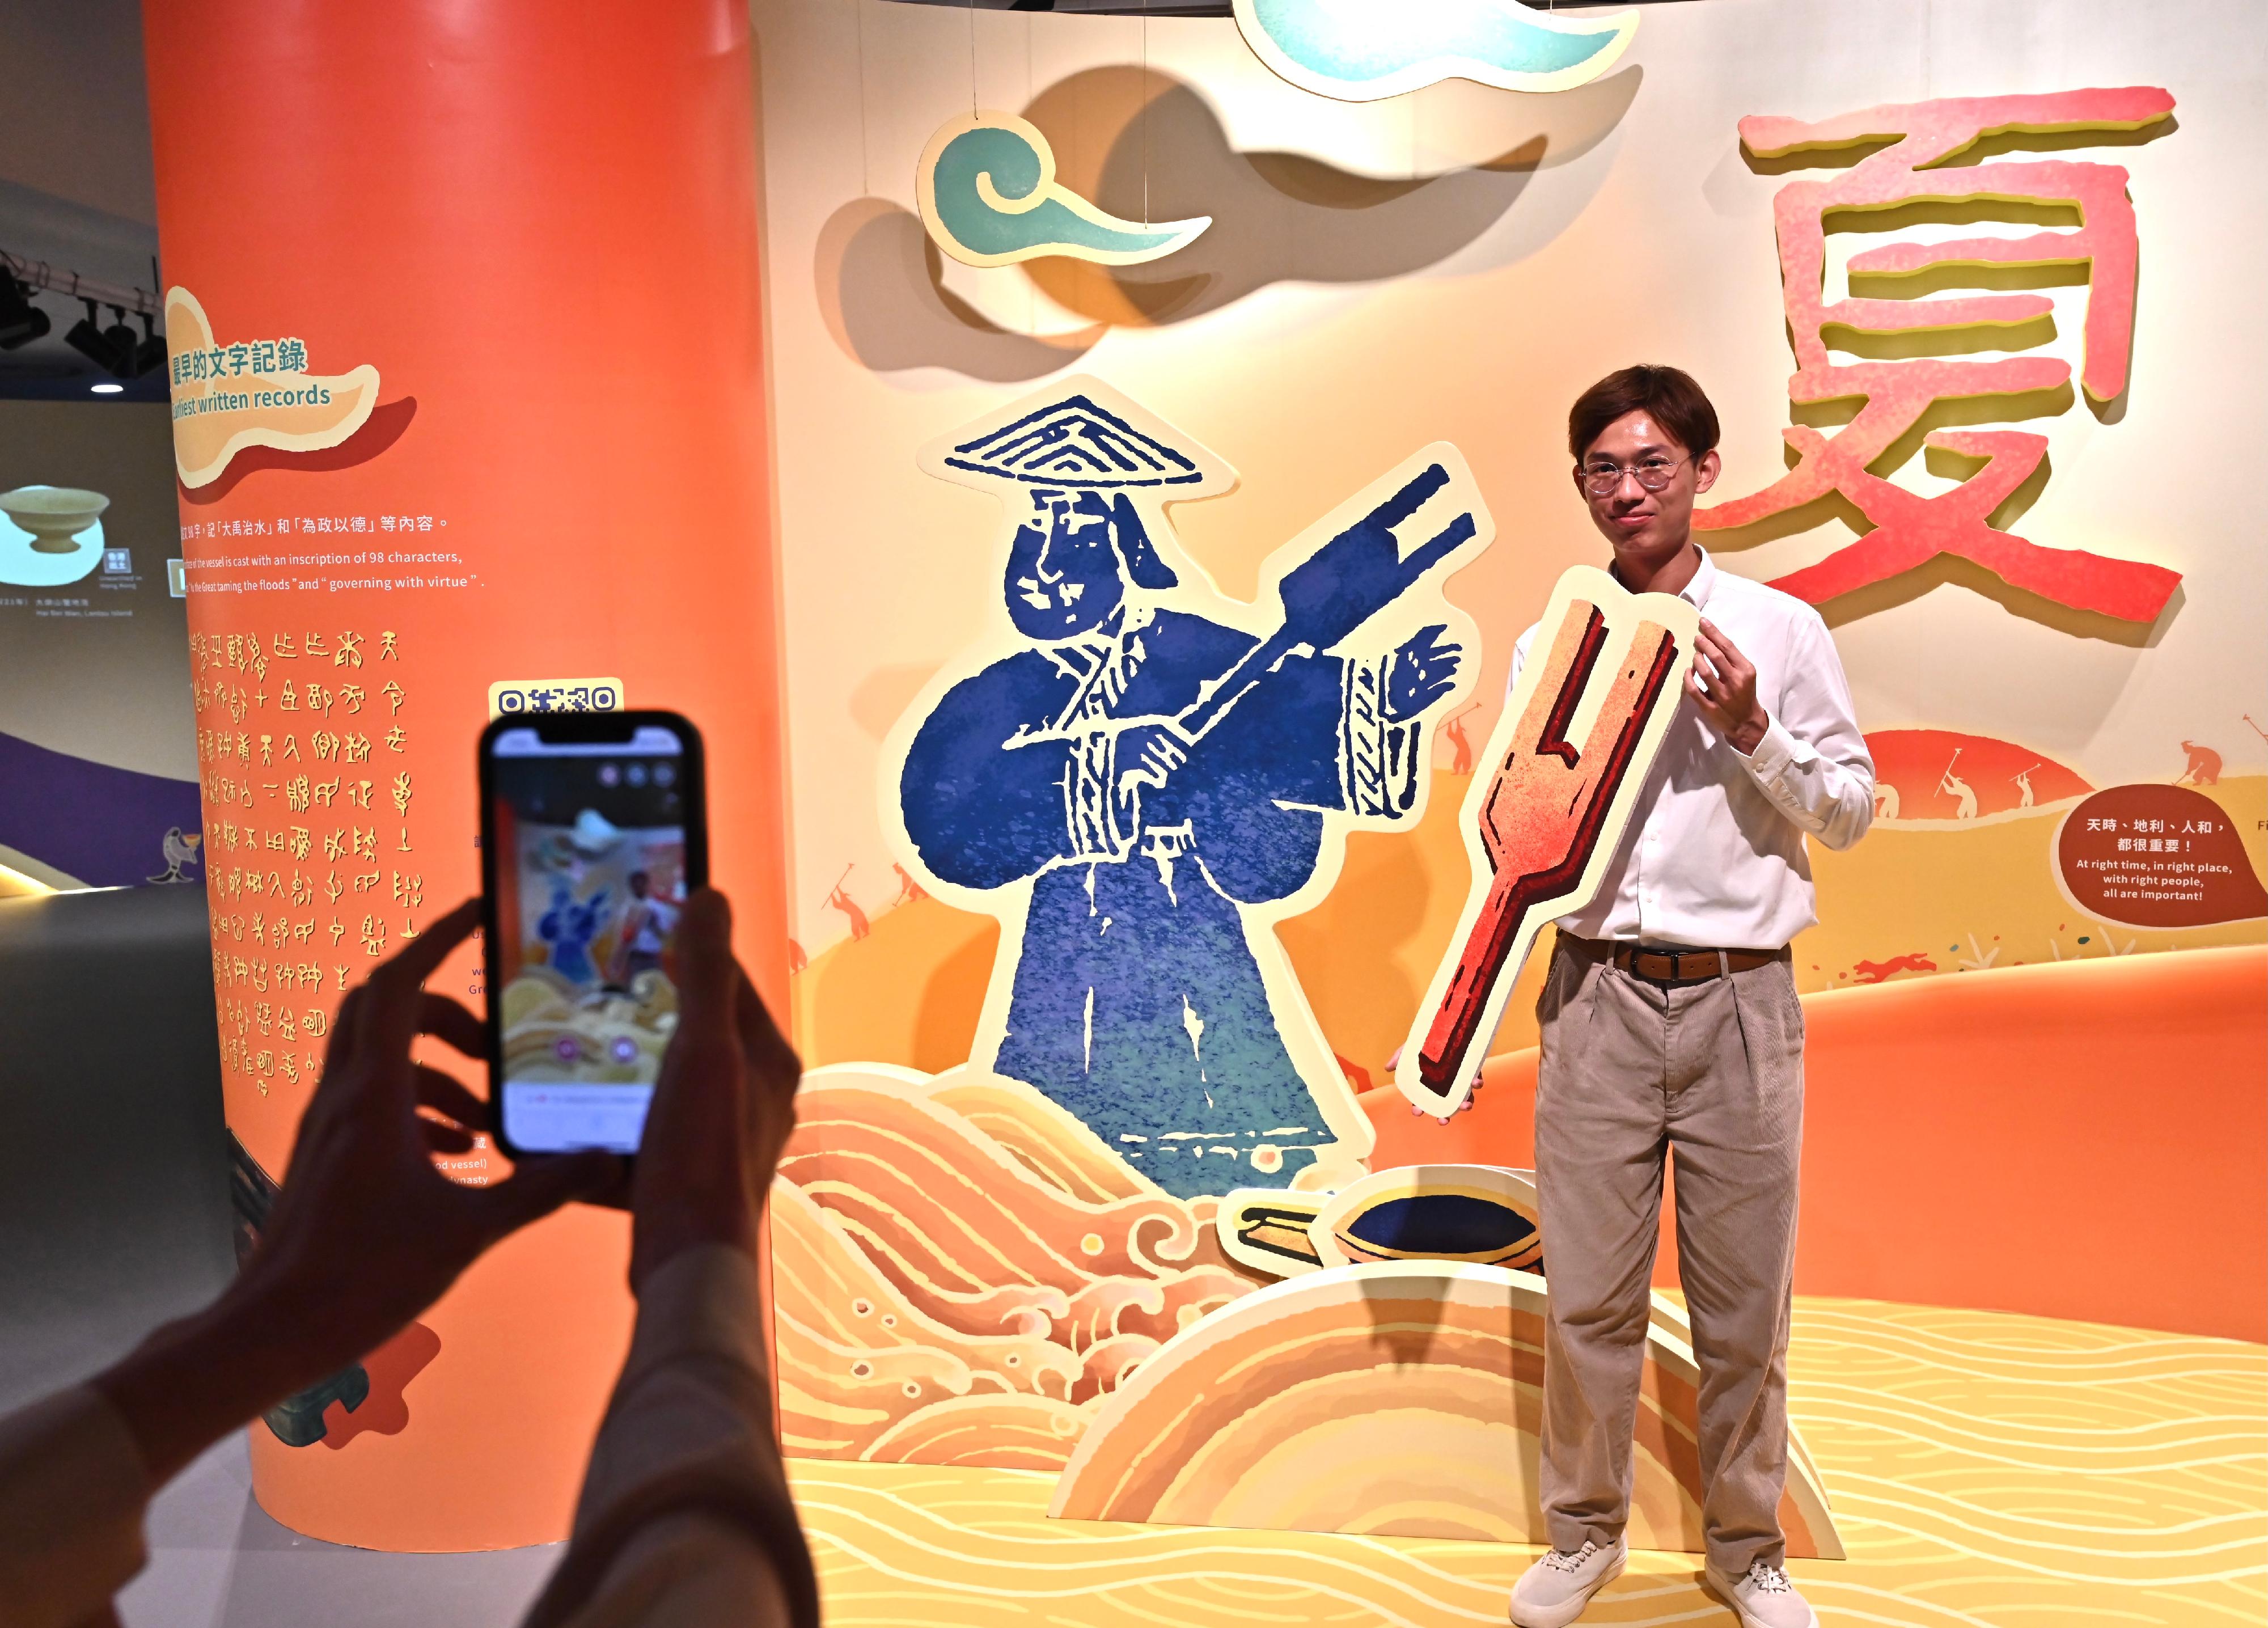 香港歷史博物館的「香港賽馬會呈獻系列：天地之中—河南夏商周三代文明展」，明日（四月三日）起開放給予公眾參觀。圖示教育互動區，透過趣味展示、互動遊戲及動畫，讓參觀者認識和了解璀璨的三代文明及其與現今生活的關連。
